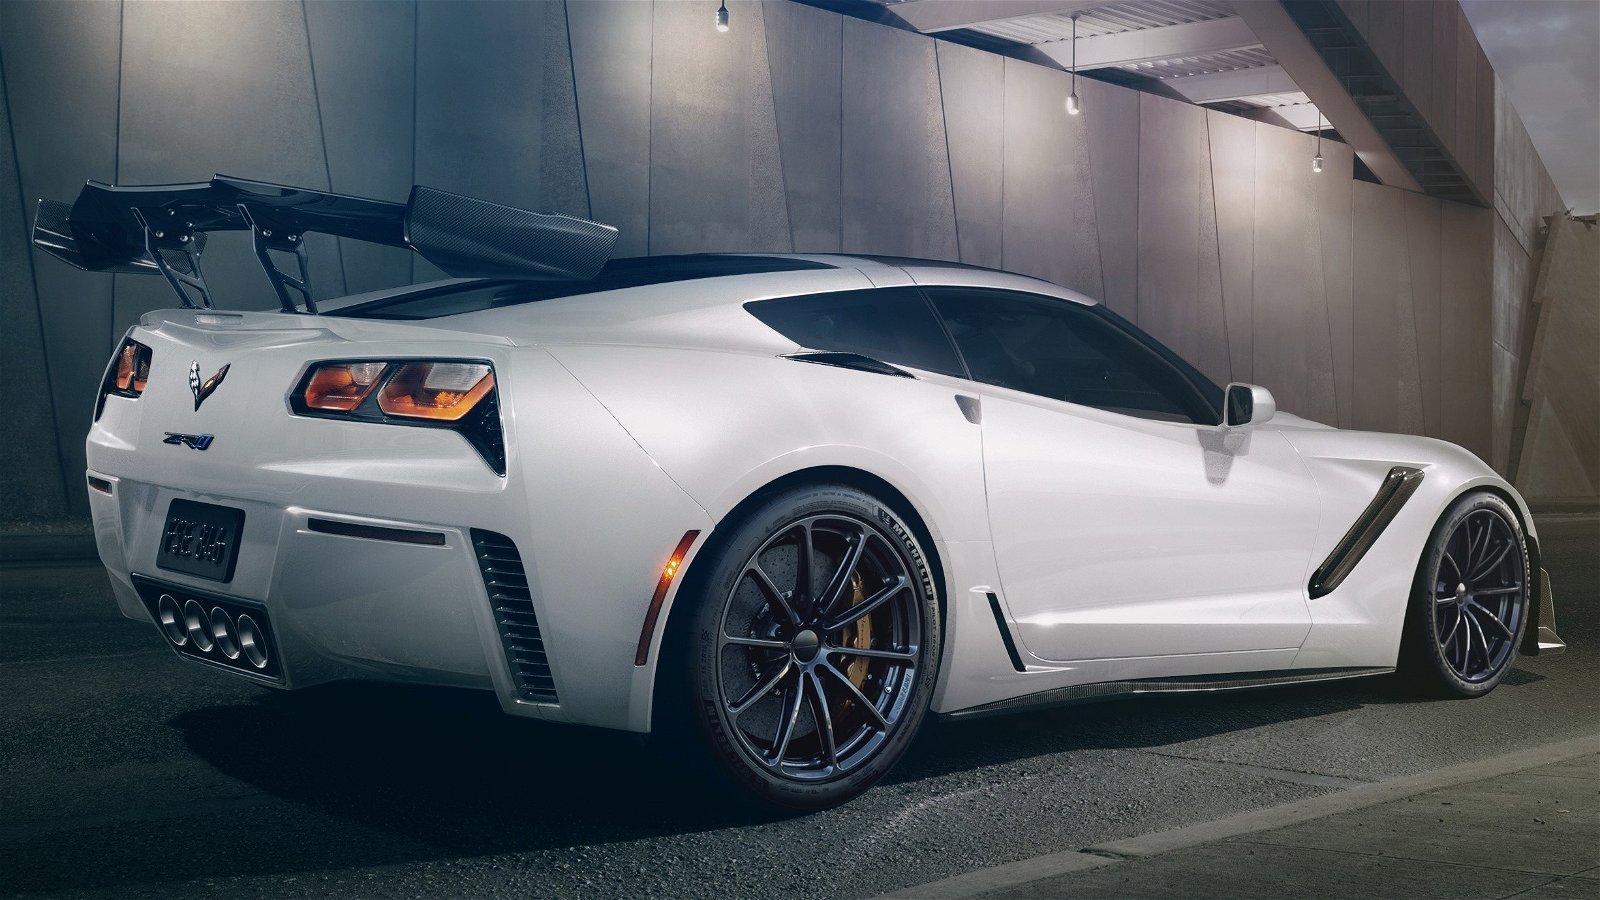 2019-zr1-corvette-hennessey-performance-white-wheels-rear